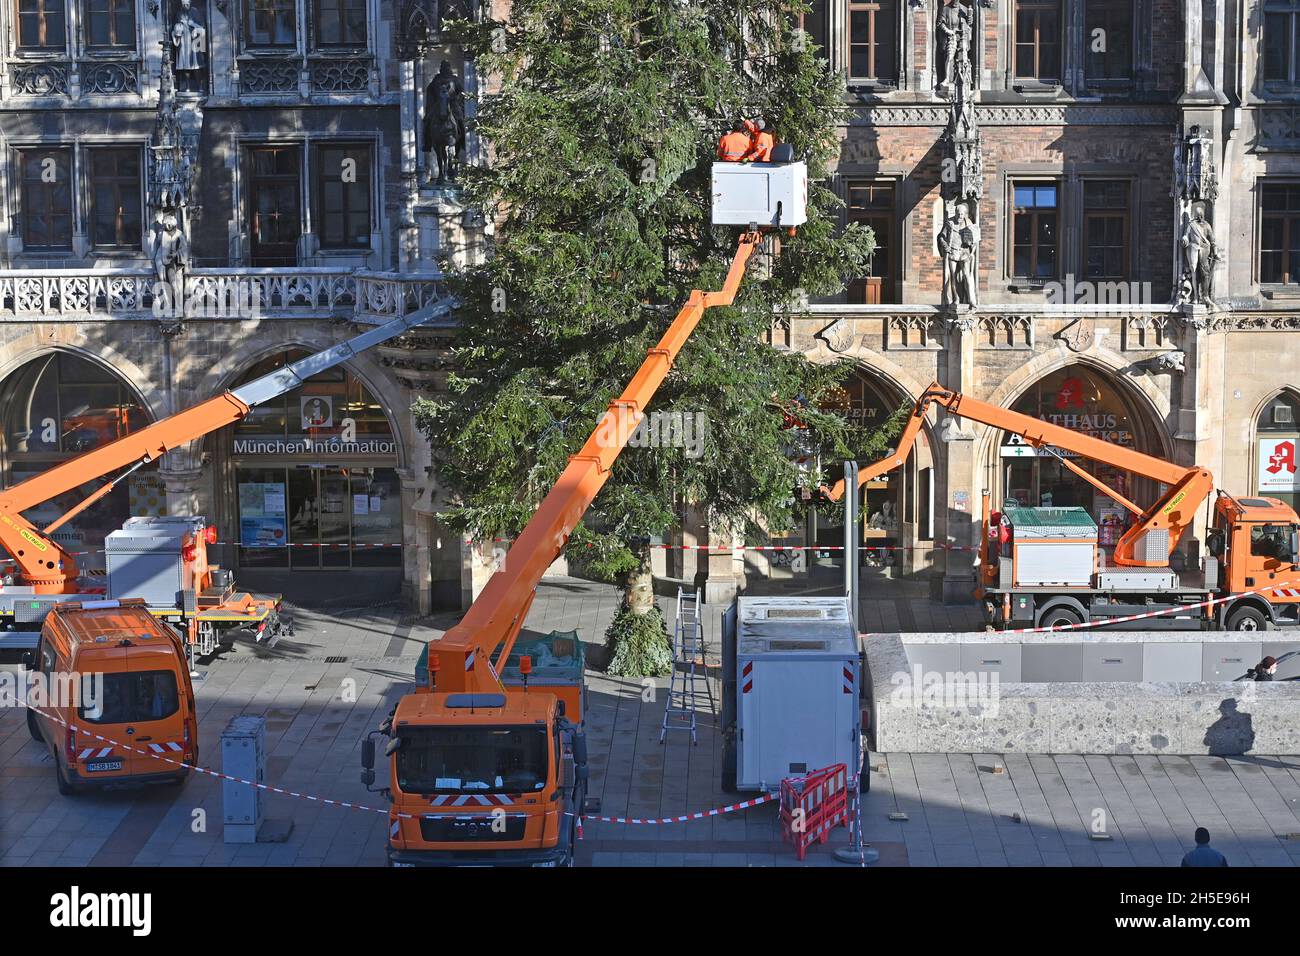 Les travailleurs sur une plate-forme élévatrice fixent l'éclairage Weihafterts au Weihaftertsbaum.Construction du marché de Noël sur Marienplatz à Munich le 9 novembre 2021. Banque D'Images